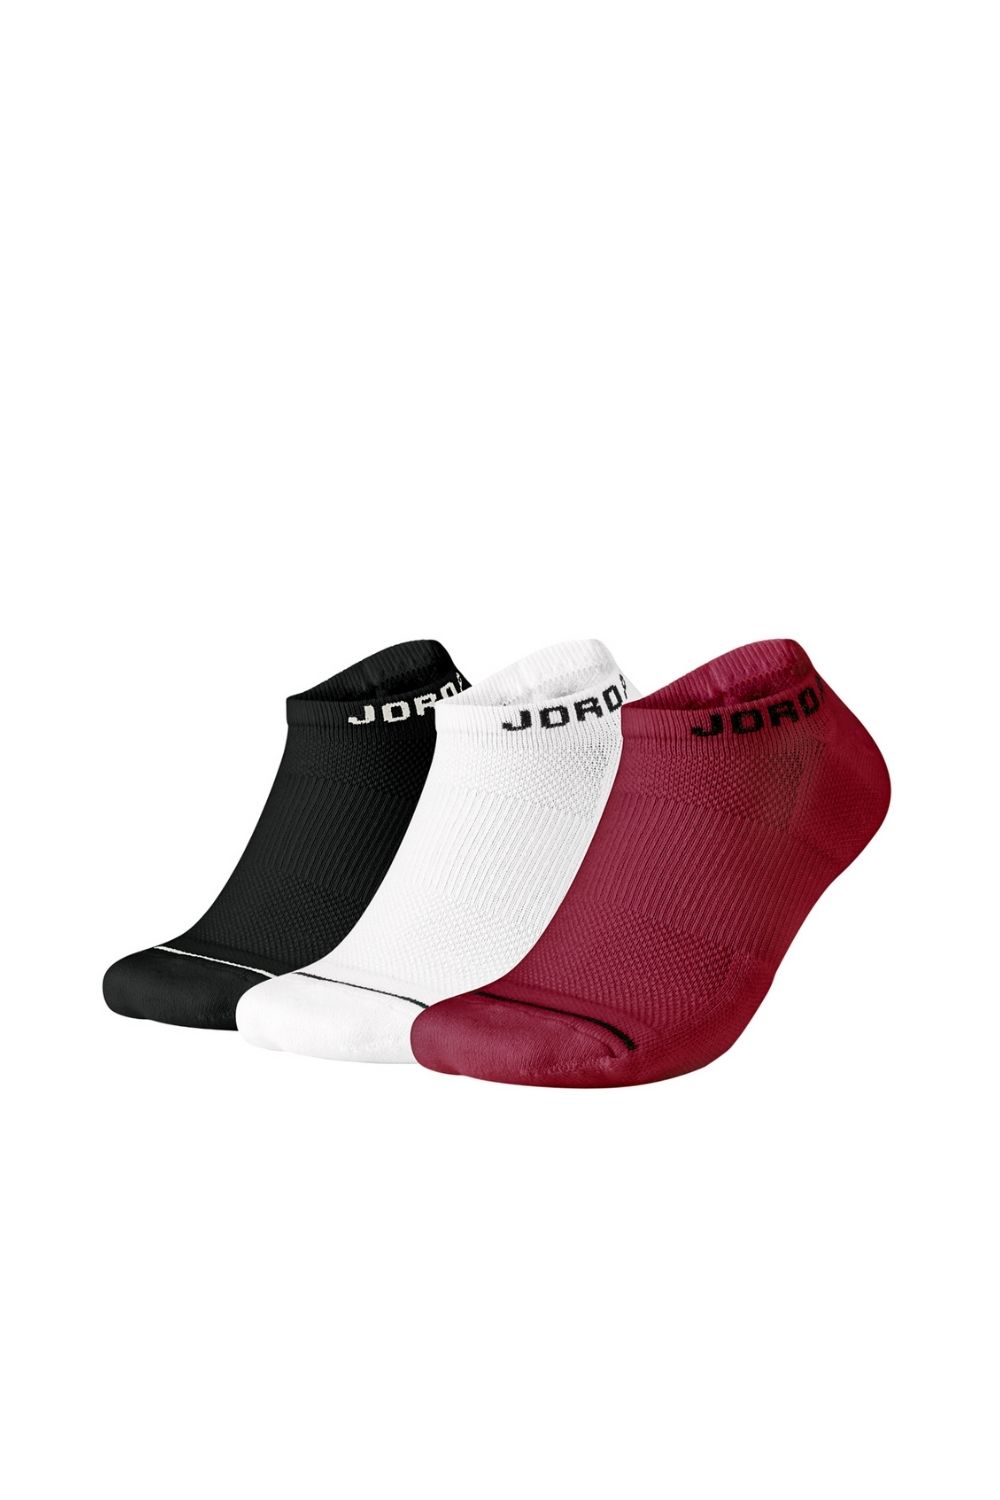 NIKE - Σετ unisex κάλτσες NIKE JORDAN EVRY MAX NS - 3PPK λευκές-μαύρες-κόκκινες Γυναικεία/Αξεσουάρ/Κάλτσες